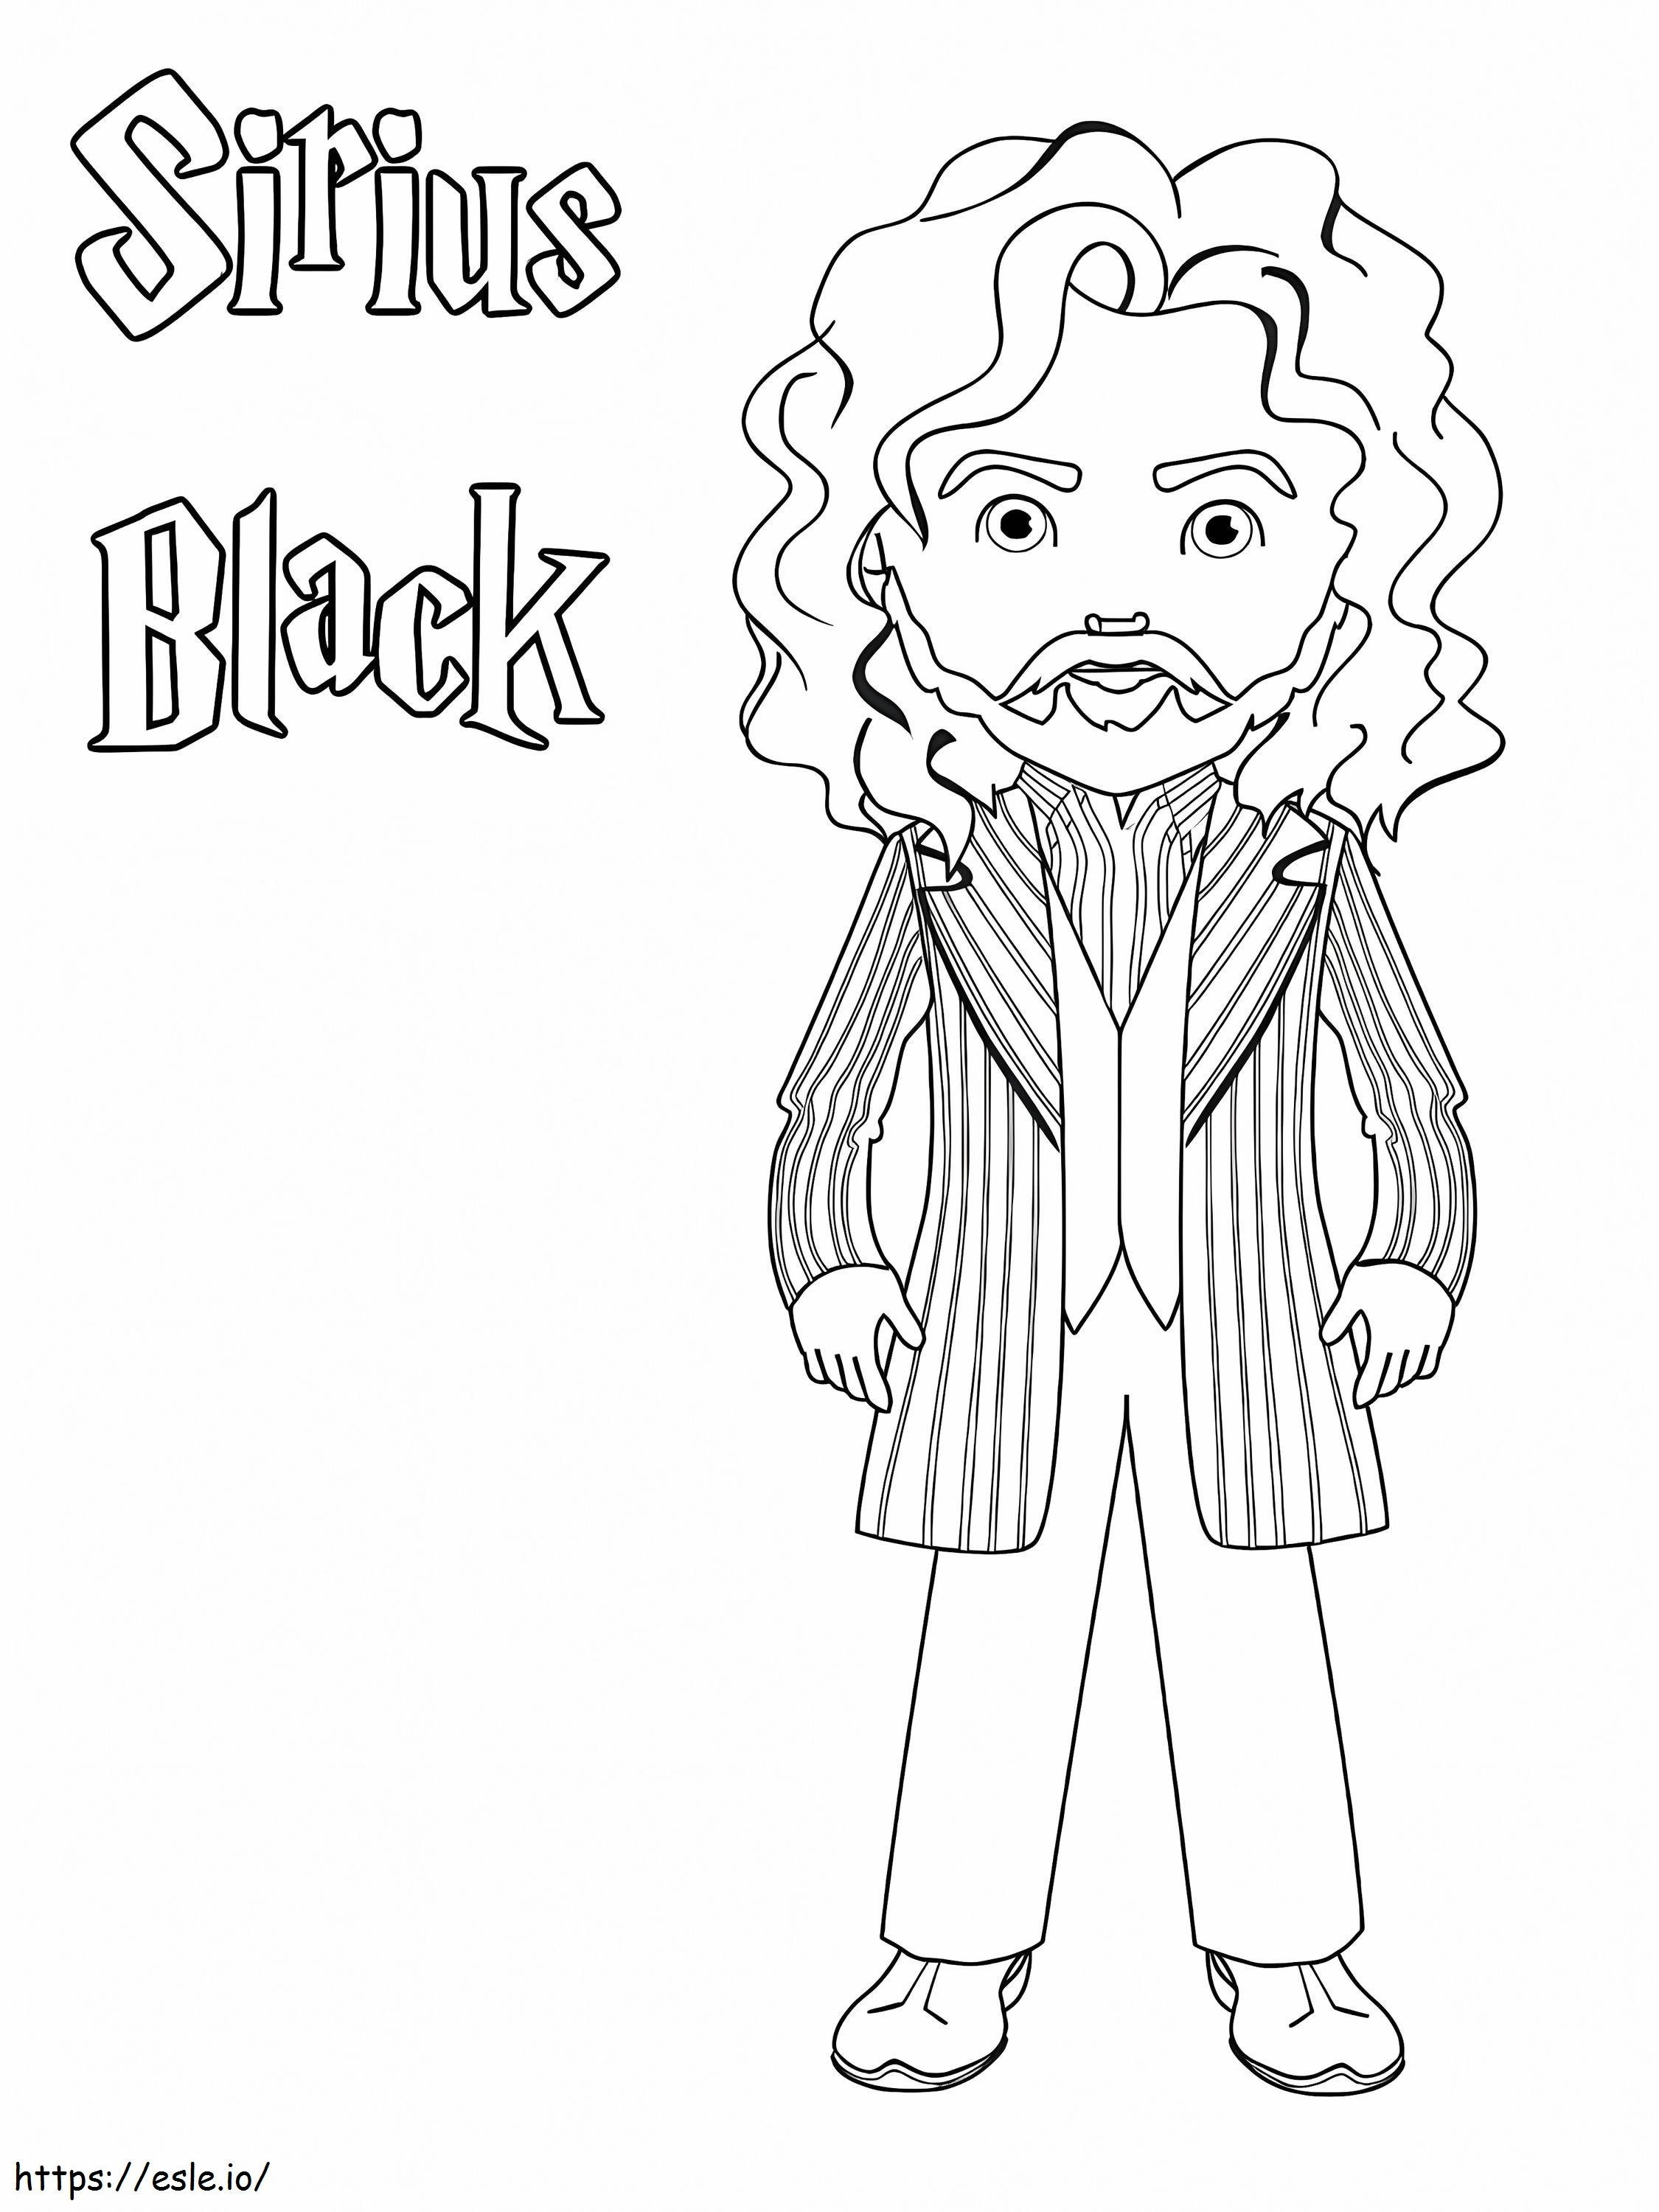 Sirius Black de colorat